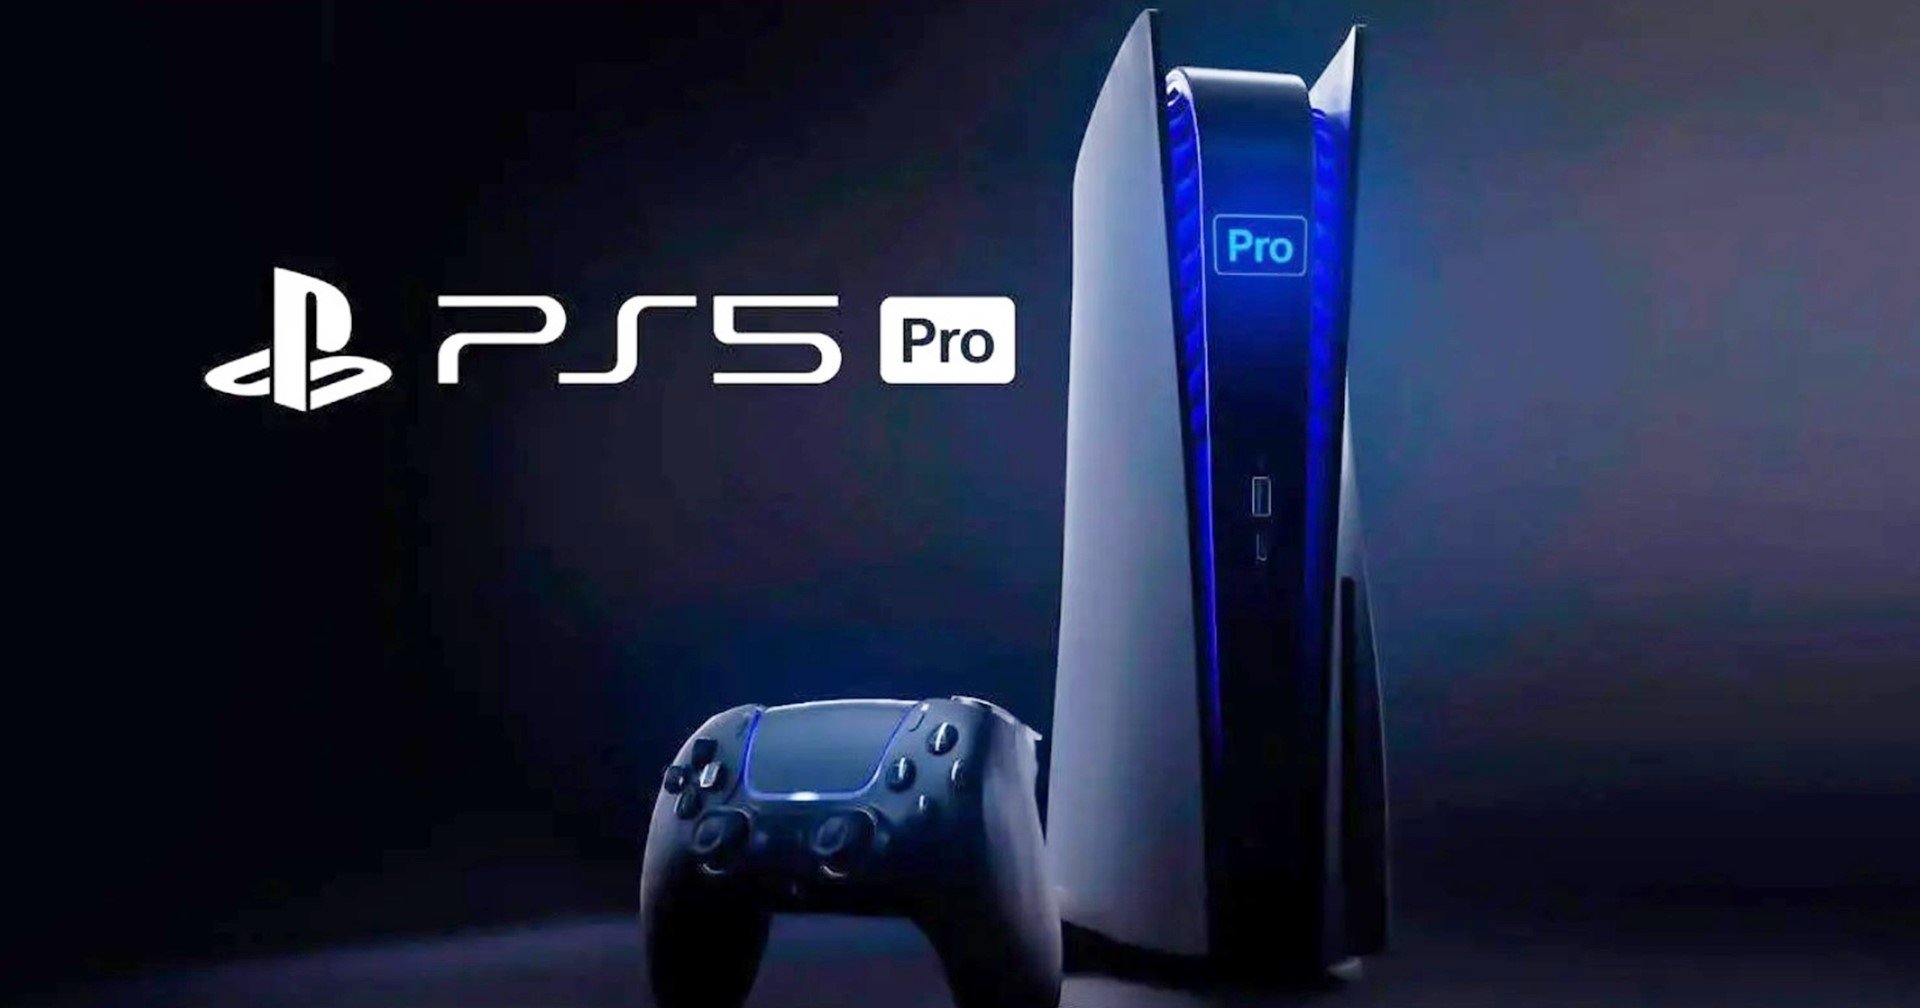 [ข่าวลือ] PS5 Pro จะเปิดตัวกลางปี และราคาแพงขึ้น 100 เหรียญ